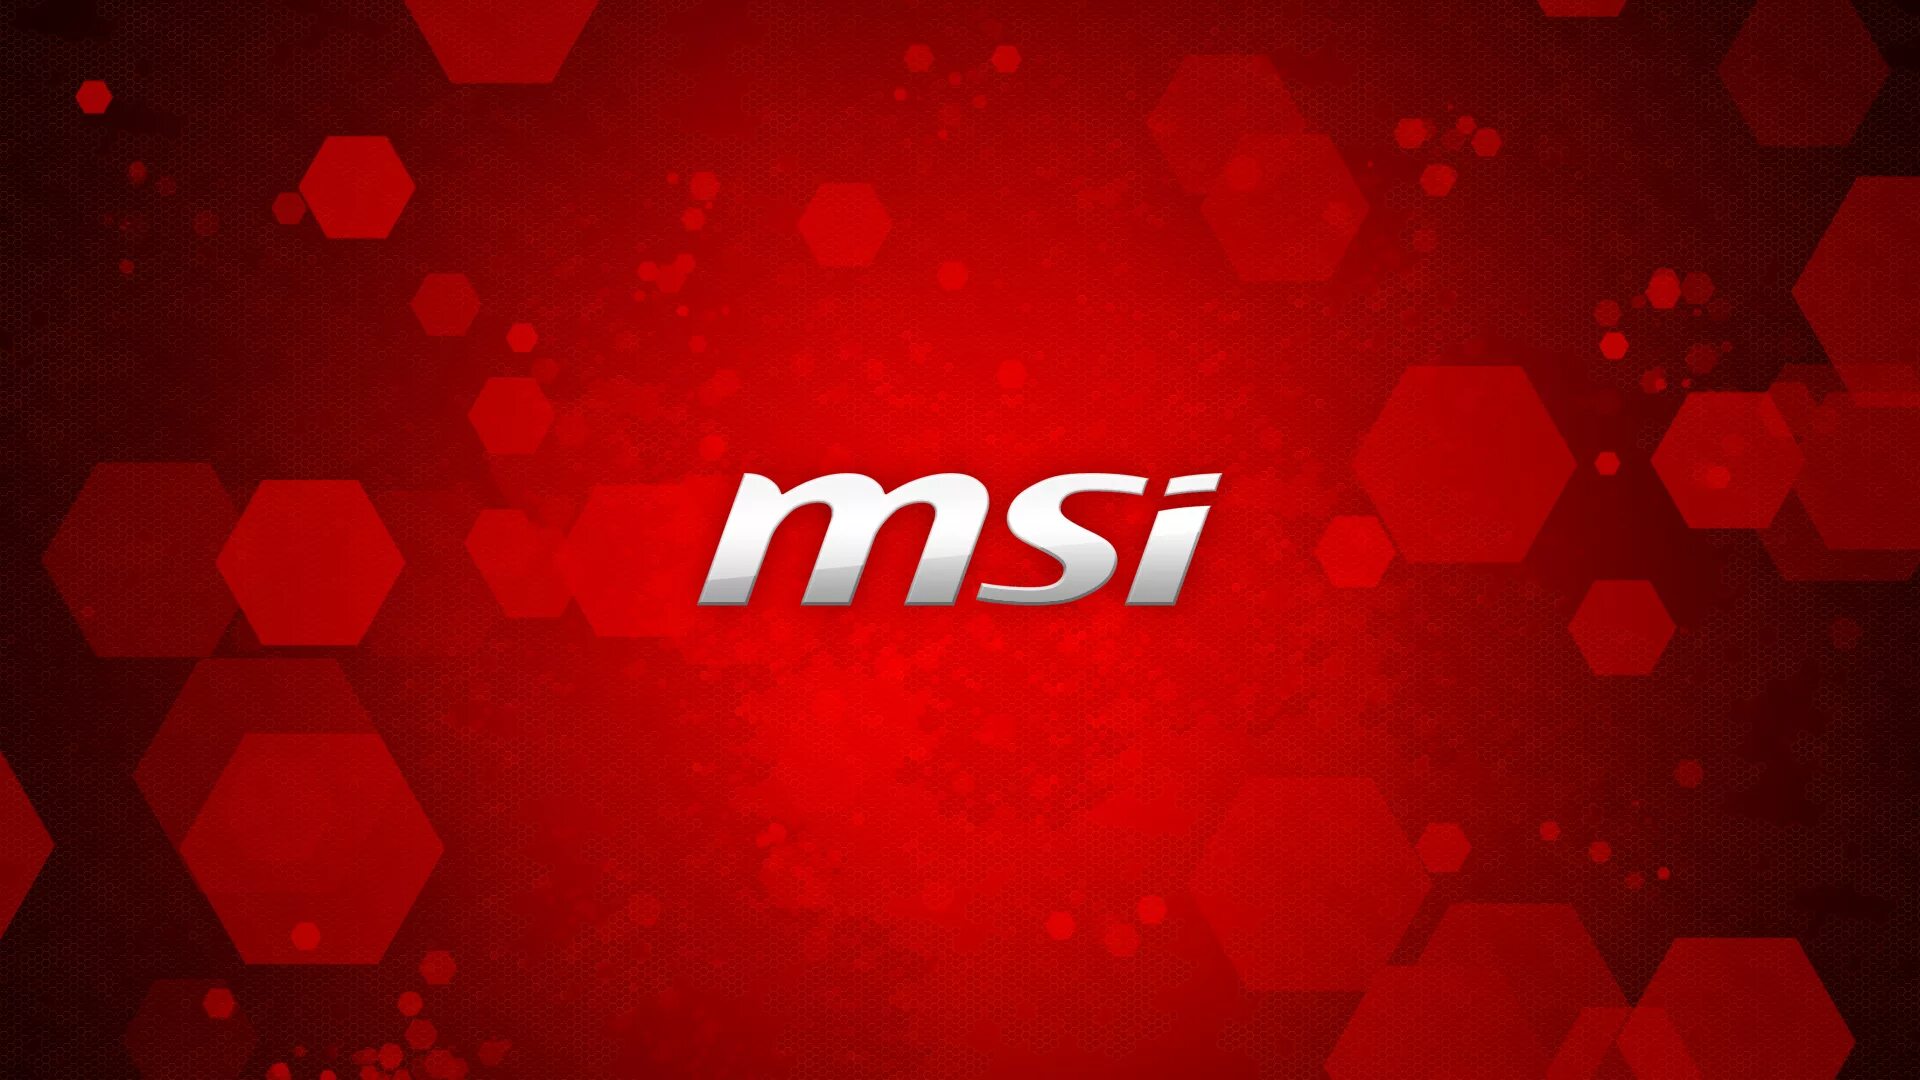 Msi 1920x1080. MSI. MSI обои. Заставка MSI. Обои на рабочий стол MSI.